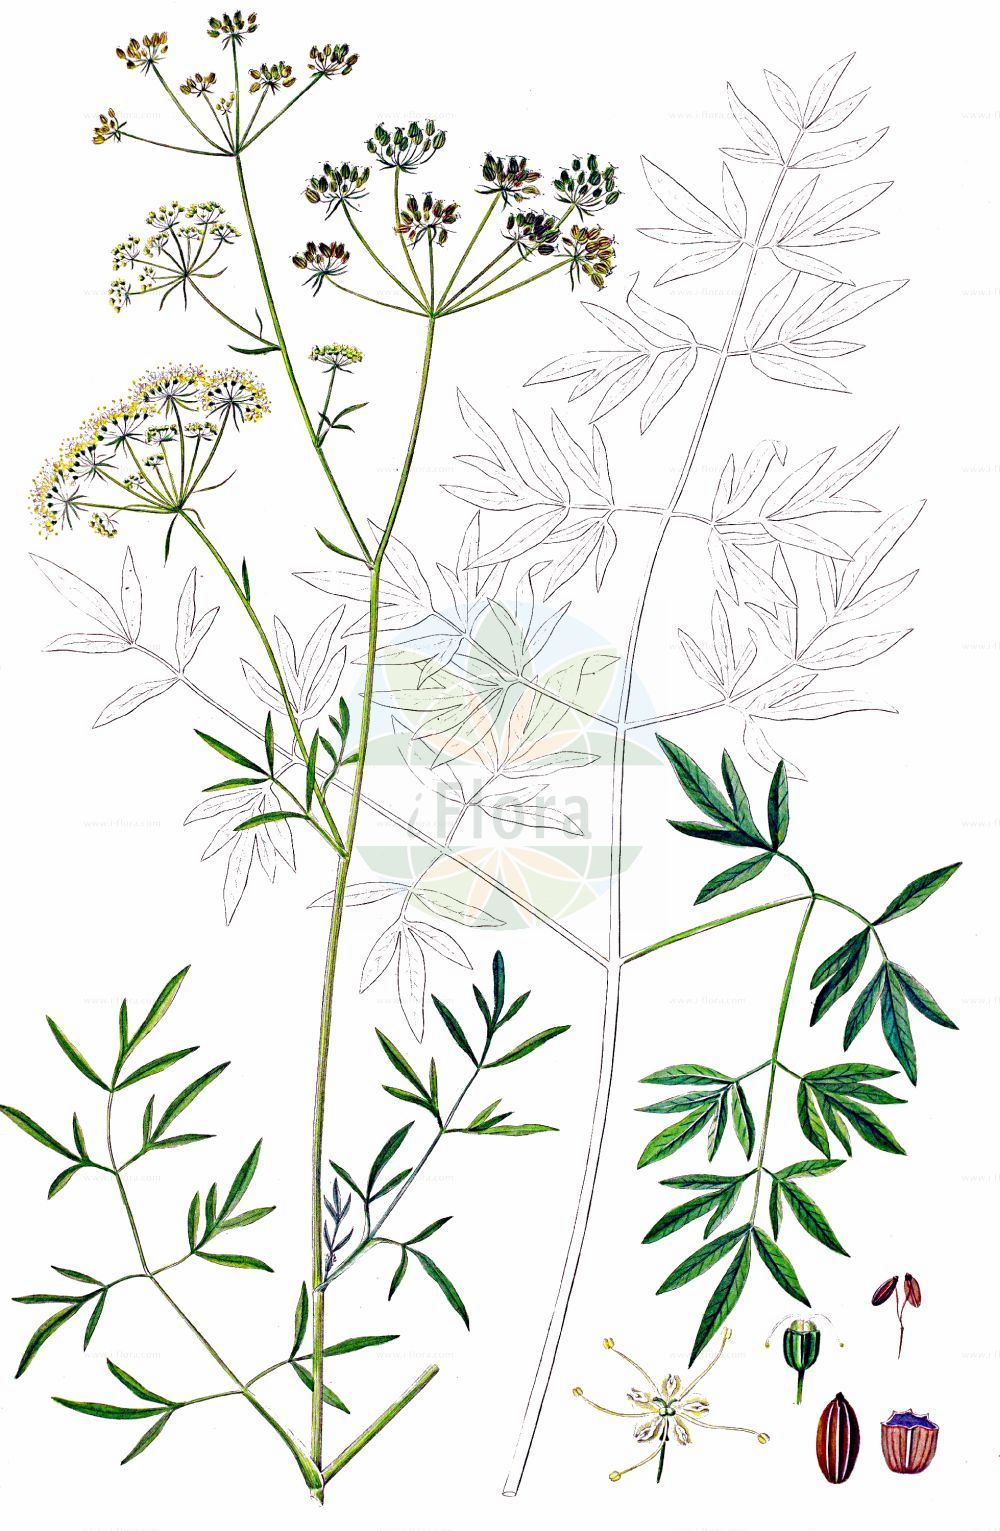 Historische Abbildung von Silaum silaus (Wiesensilge - Pepper-saxifrage). Das Bild zeigt Blatt, Bluete, Frucht und Same. ---- Historical Drawing of Silaum silaus (Wiesensilge - Pepper-saxifrage). The image is showing leaf, flower, fruit and seed.(Silaum silaus,Wiesensilge,Pepper-saxifrage,Peucedanum alpestre,Peucedanum silaus,Silaum alpestre,Silaum silaus,Silaum tenuifolium,Silaus tenuifolius,Wiesensilge,Silgenaehnlicher Rosskuemmel,Wiesen-Silau,Pepper-saxifrage,Meadow Pepper,Silaum,Silge,Silaum,Apiaceae,Doldengewächse,Carrot family,Blatt,Bluete,Frucht,Same,leaf,flower,fruit,seed,Oeder (1761-1883))